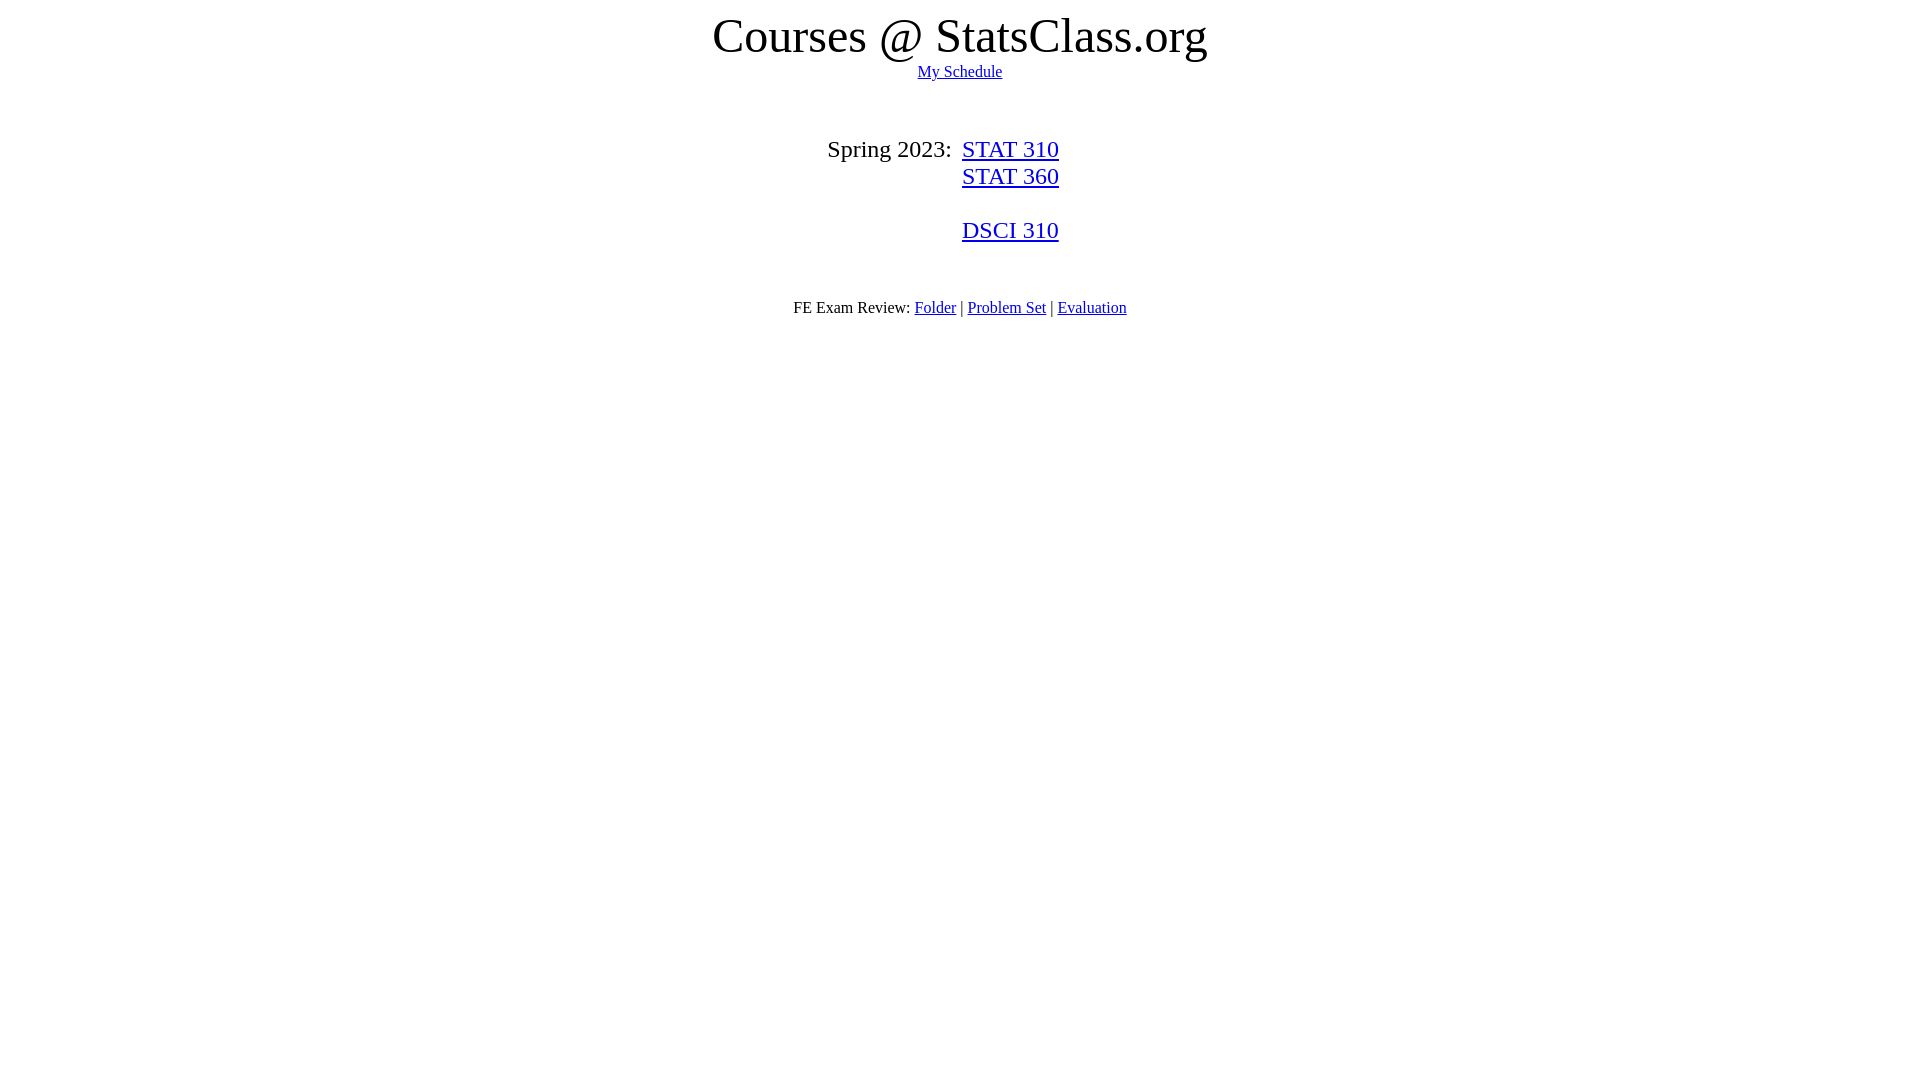 网站状态 statsclass.org 是  在线的